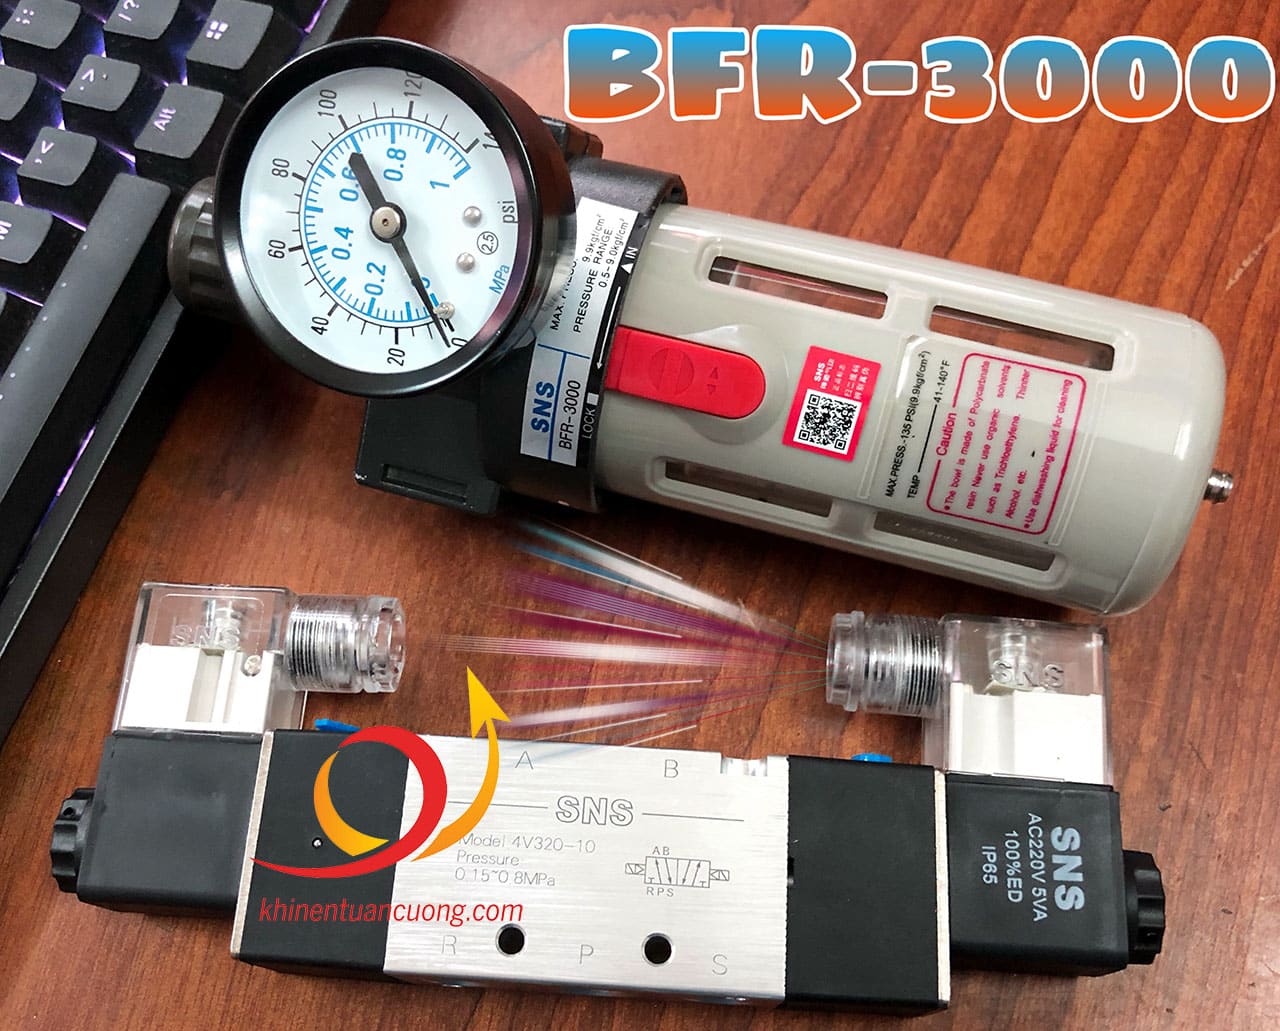 Lọc đơn BFR3000 SNS giúp lọc khí khô và sạch trước khi vào van điện từ 4V320-10 